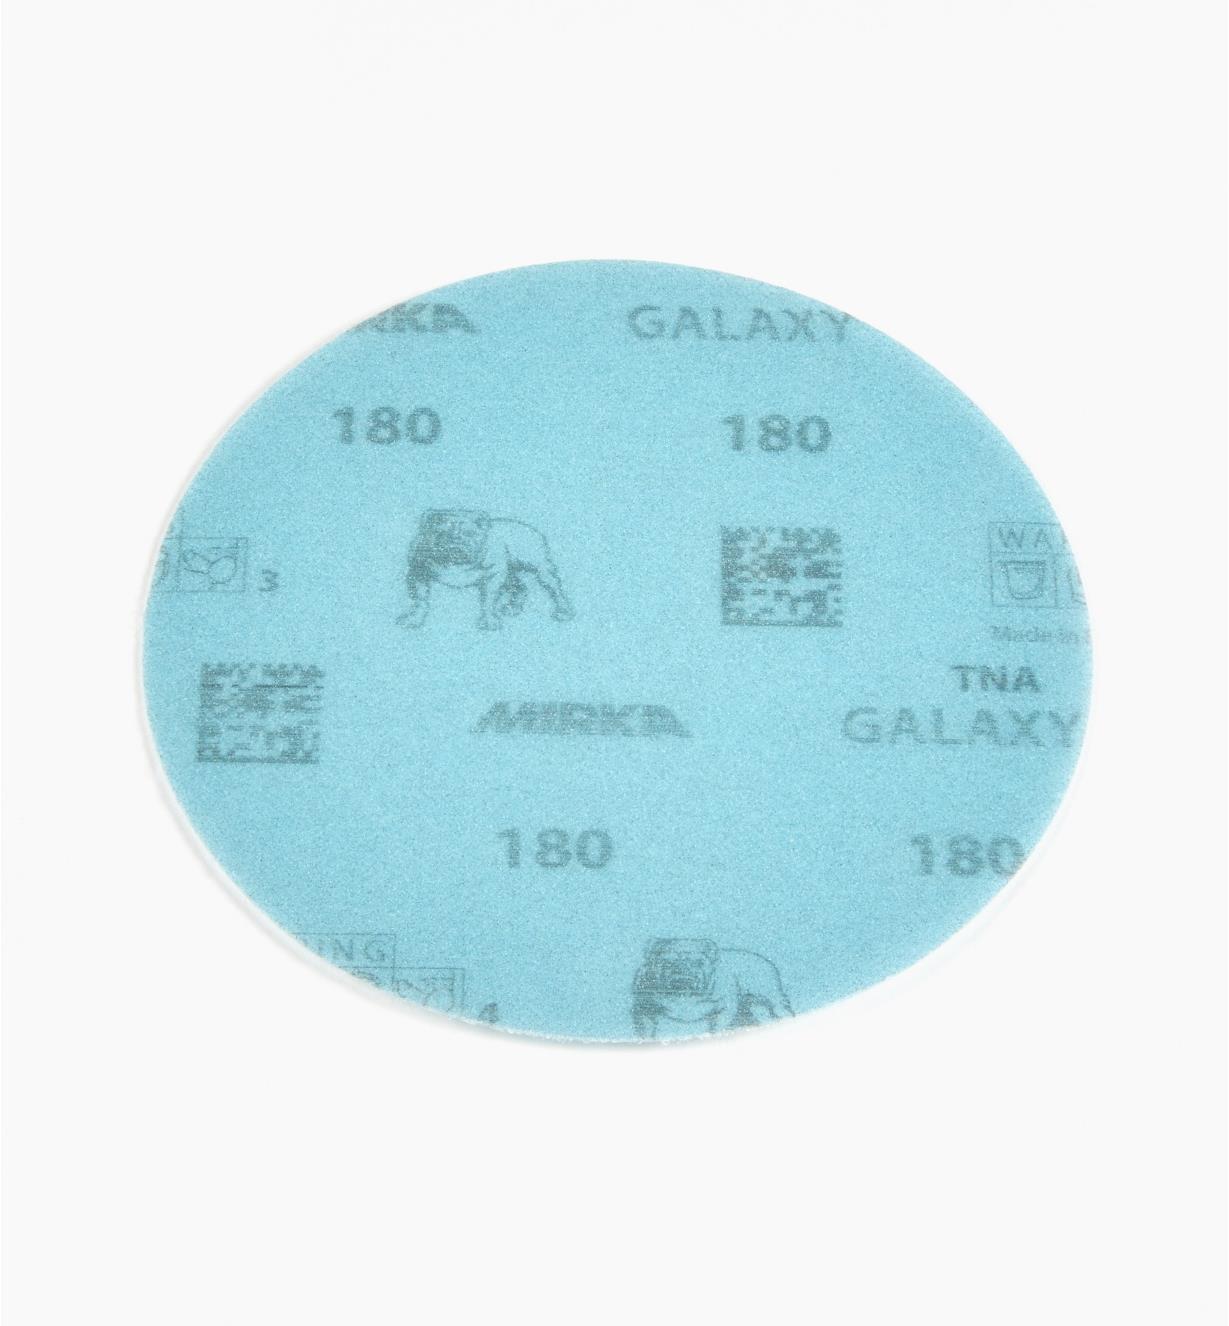 08K1307 - 180x 5" Galaxy Grip Disc, ea.